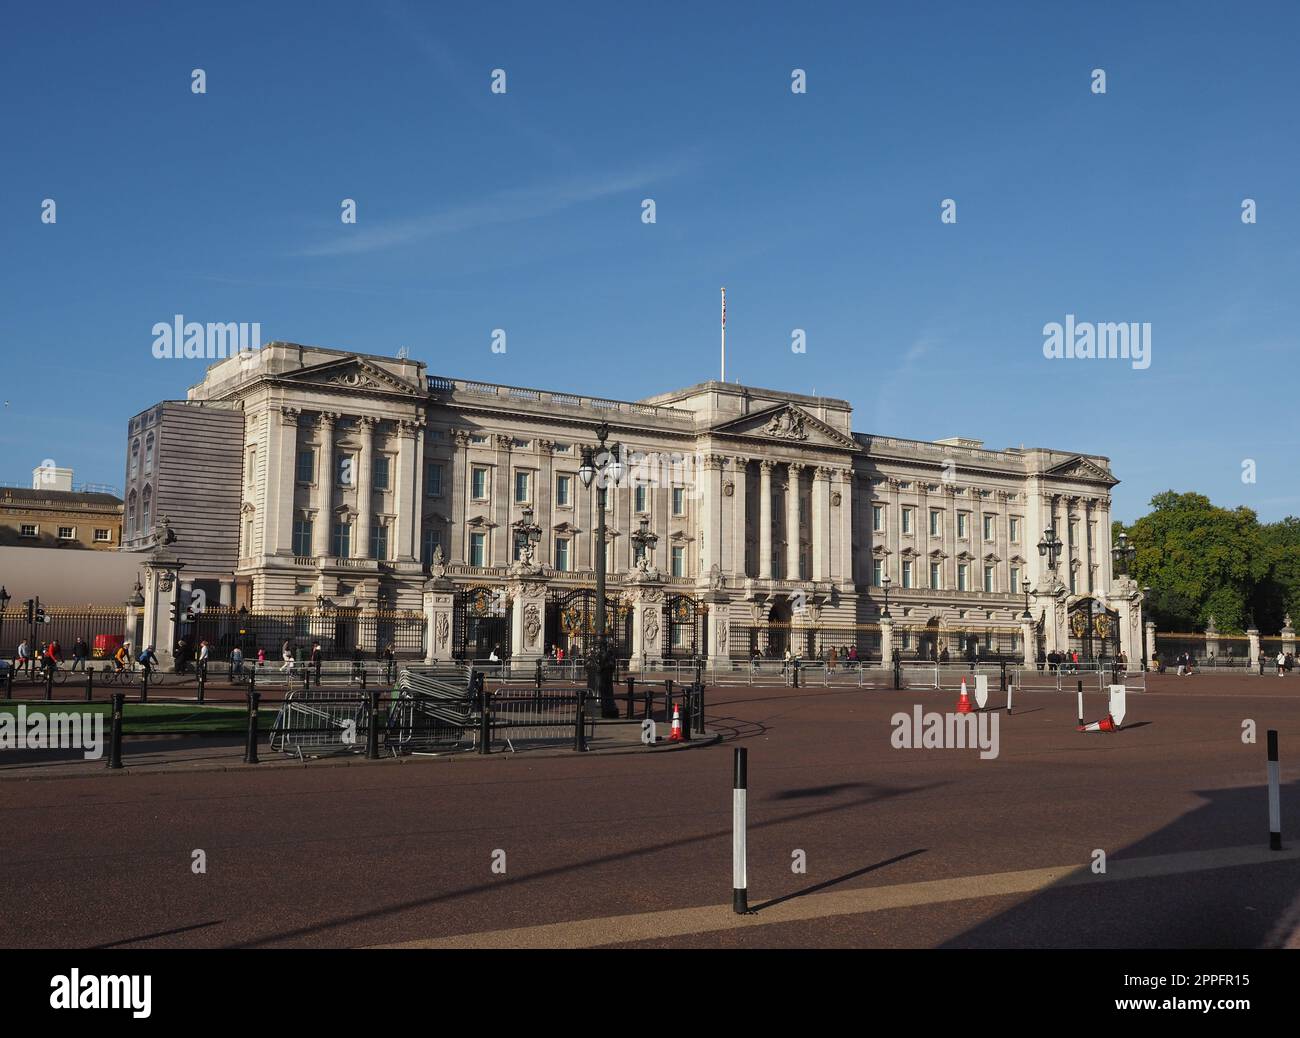 Le palais de Buckingham à Londres Banque D'Images